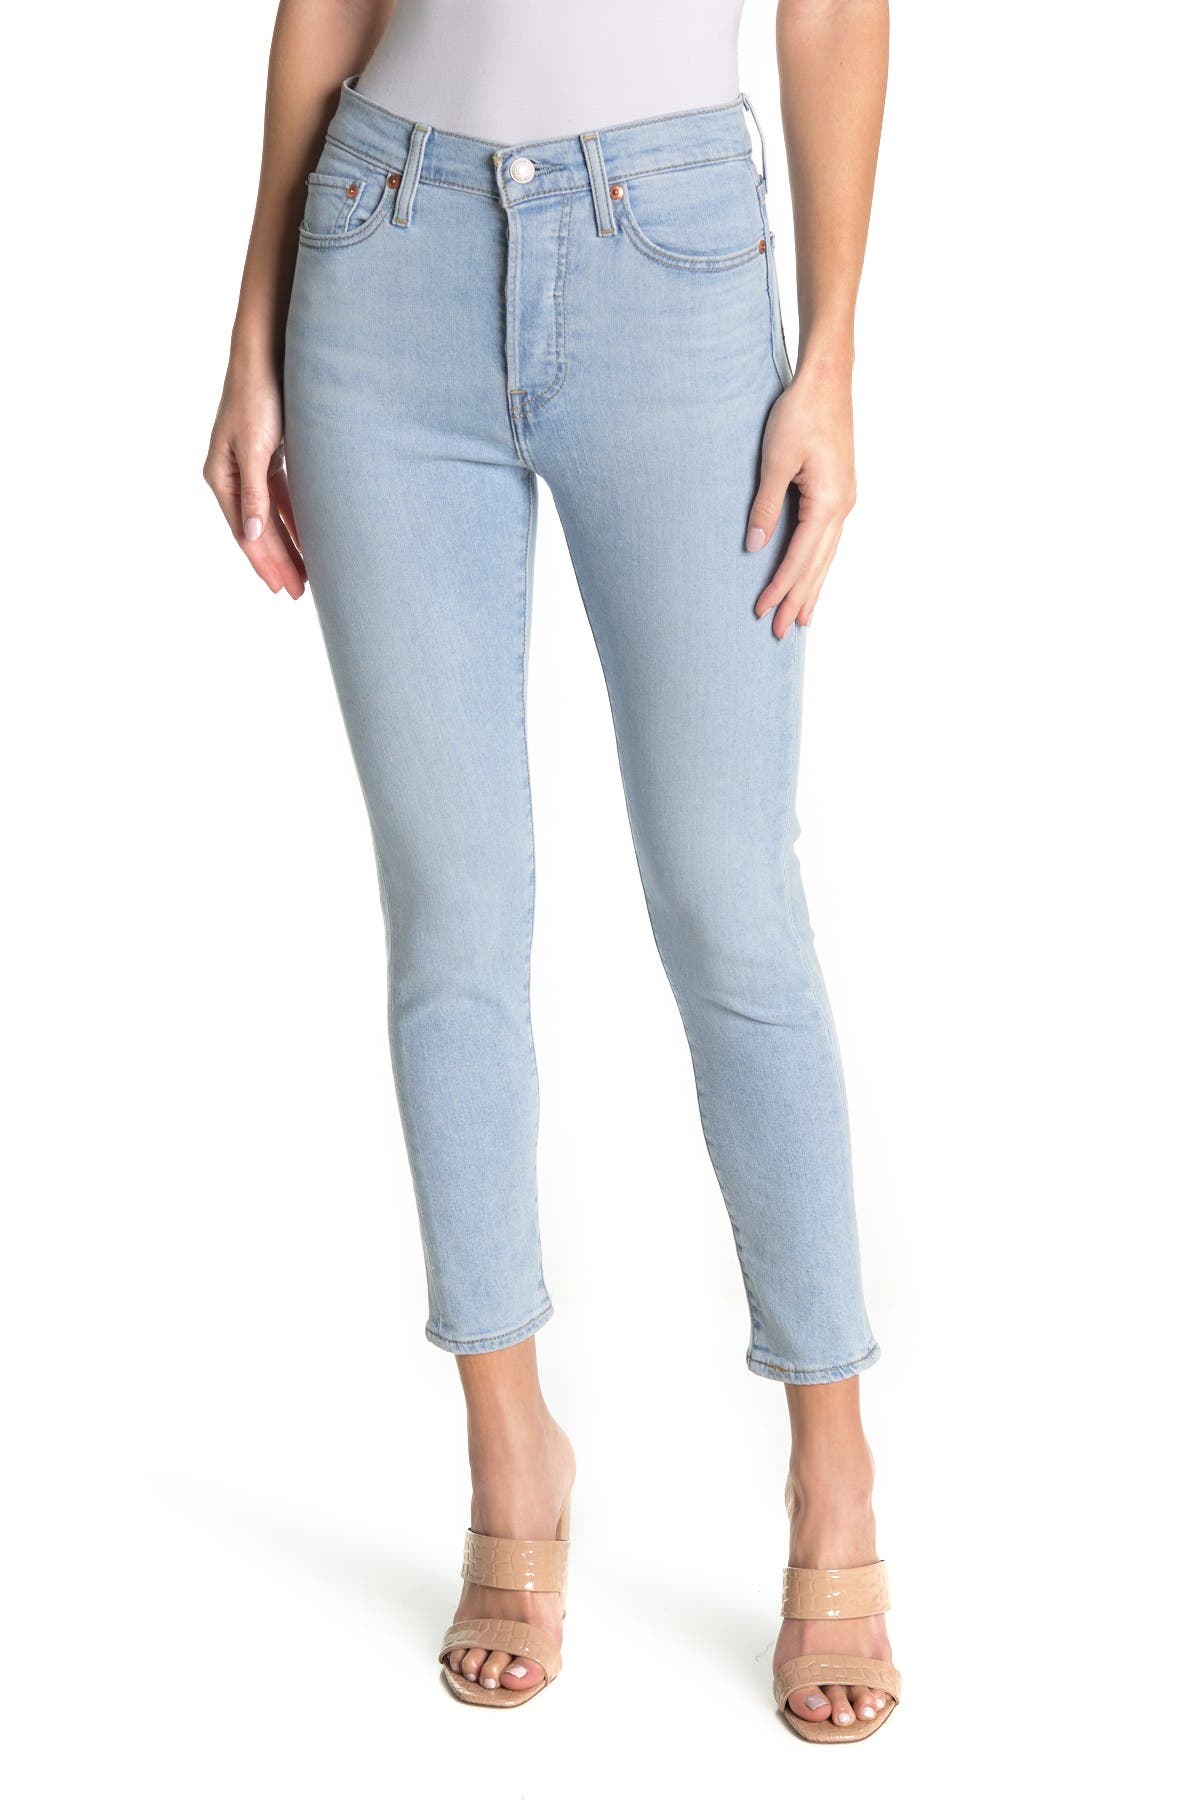 Levi's | Wedgie Skinny Stretch Jeans 